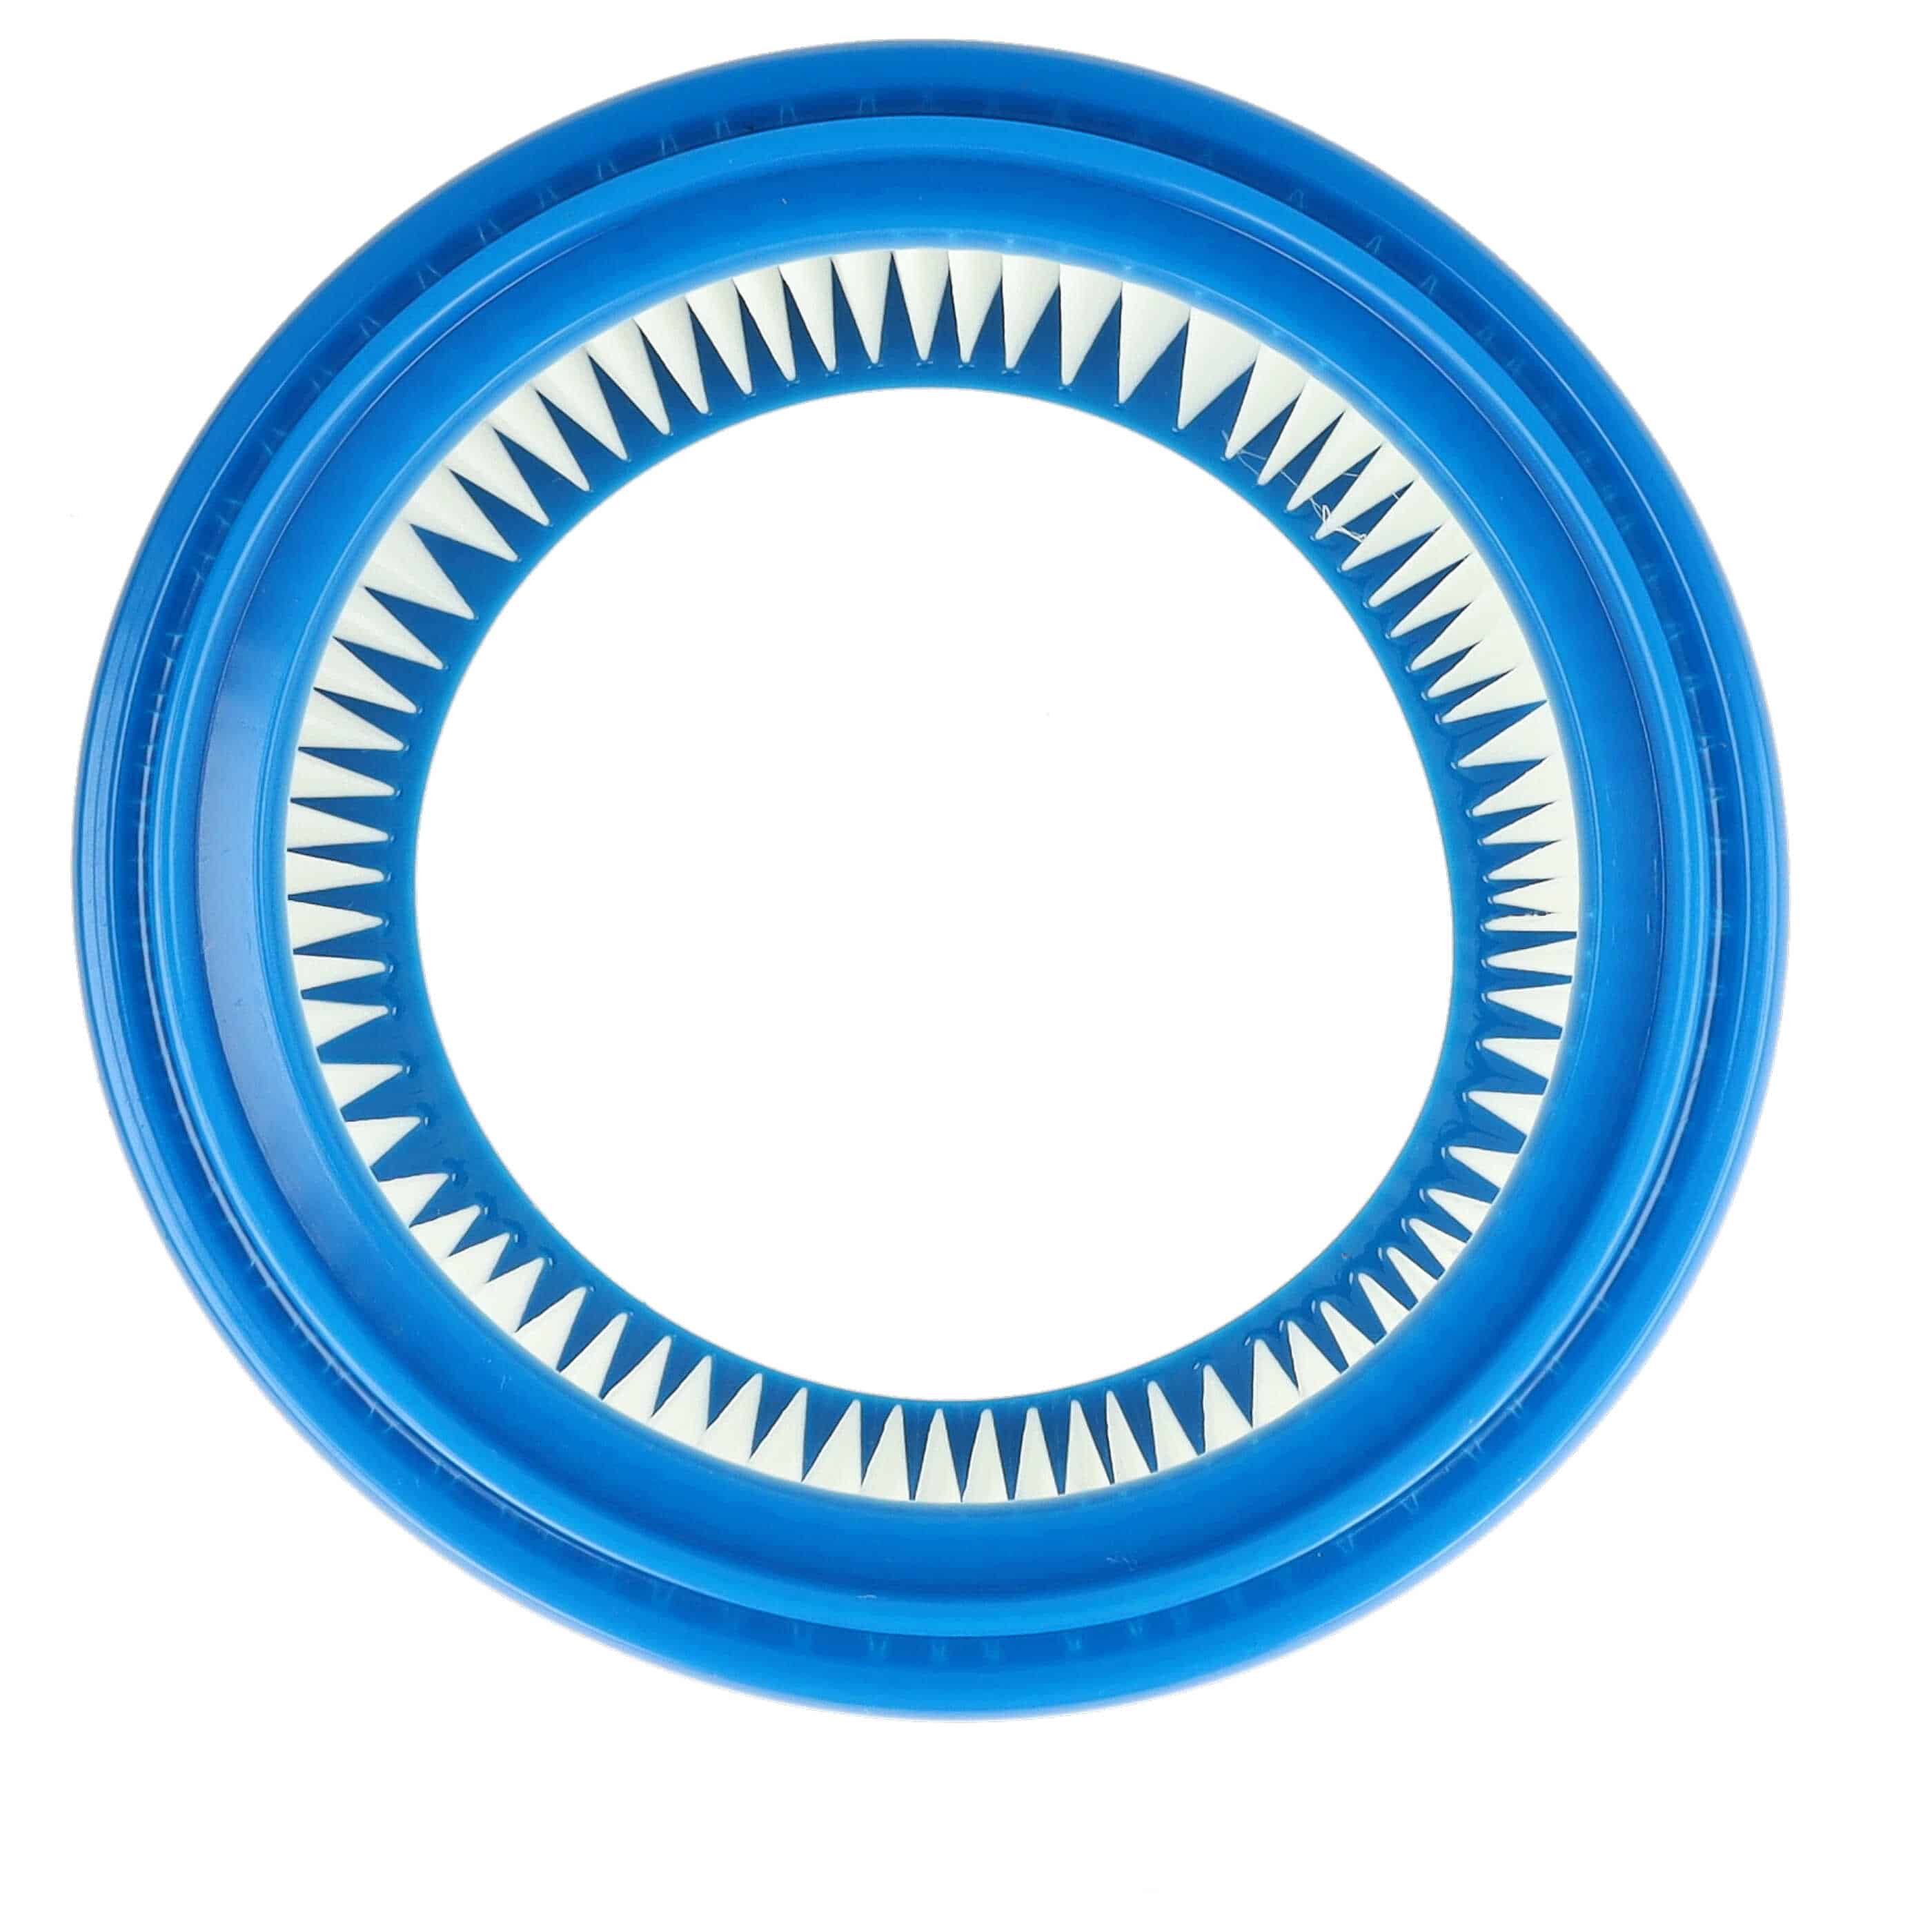 10x Filtr do odkurzacza Bosch zamiennik Bosch 2607432024 - filtr okrągły, biały / niebieski